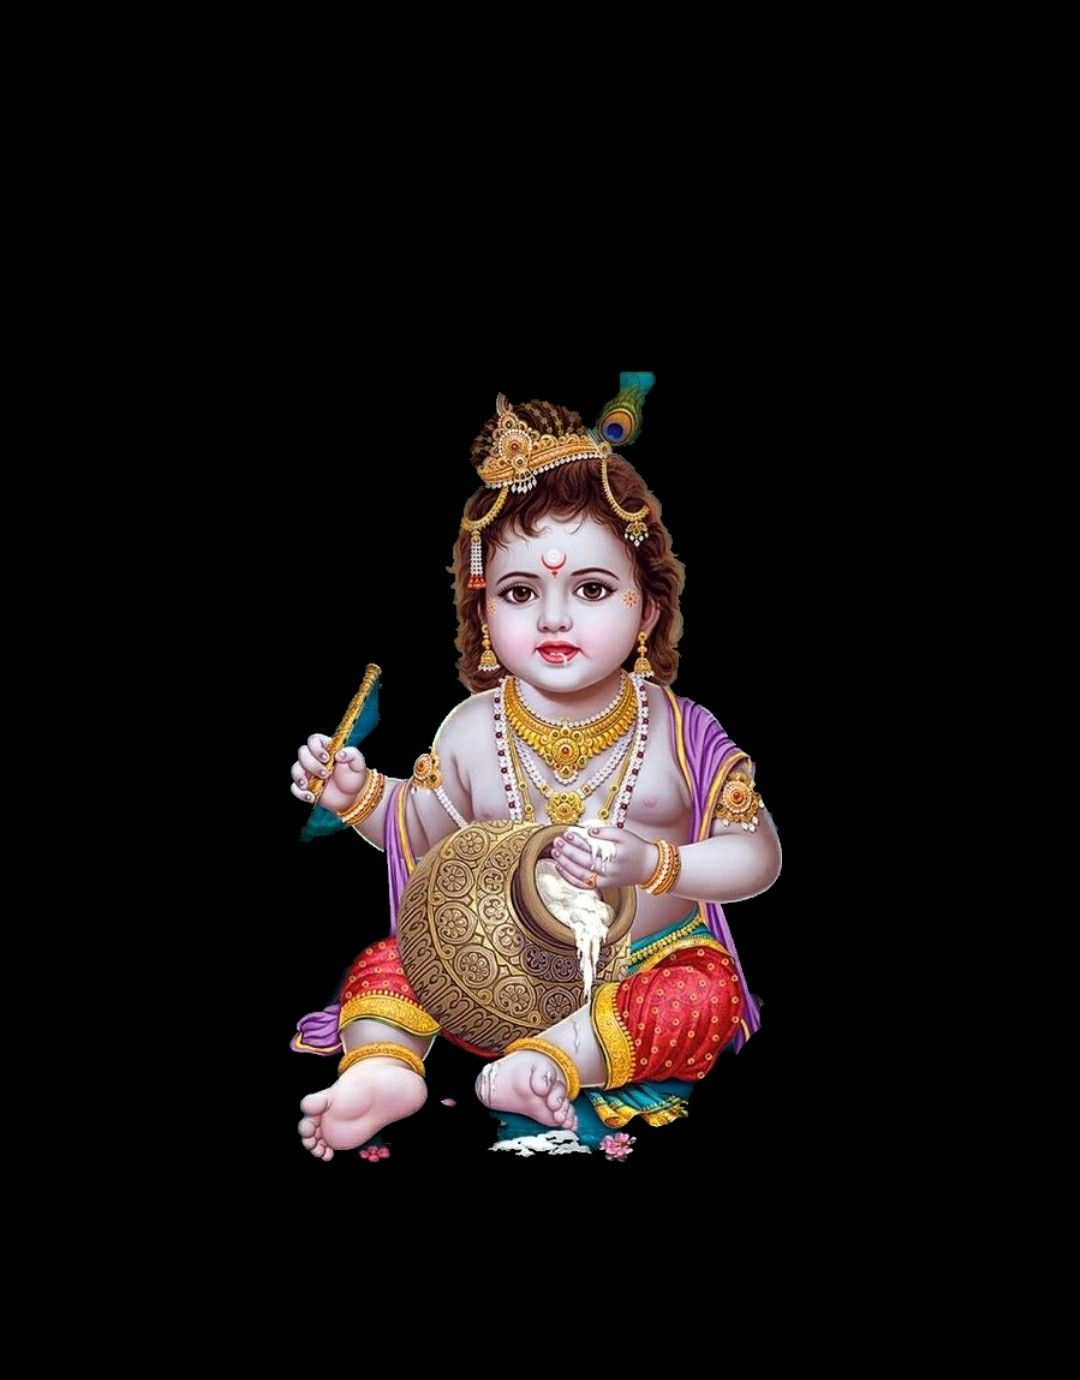 Photos of god. Baby krishna, Bal krishna, Lord krishna image